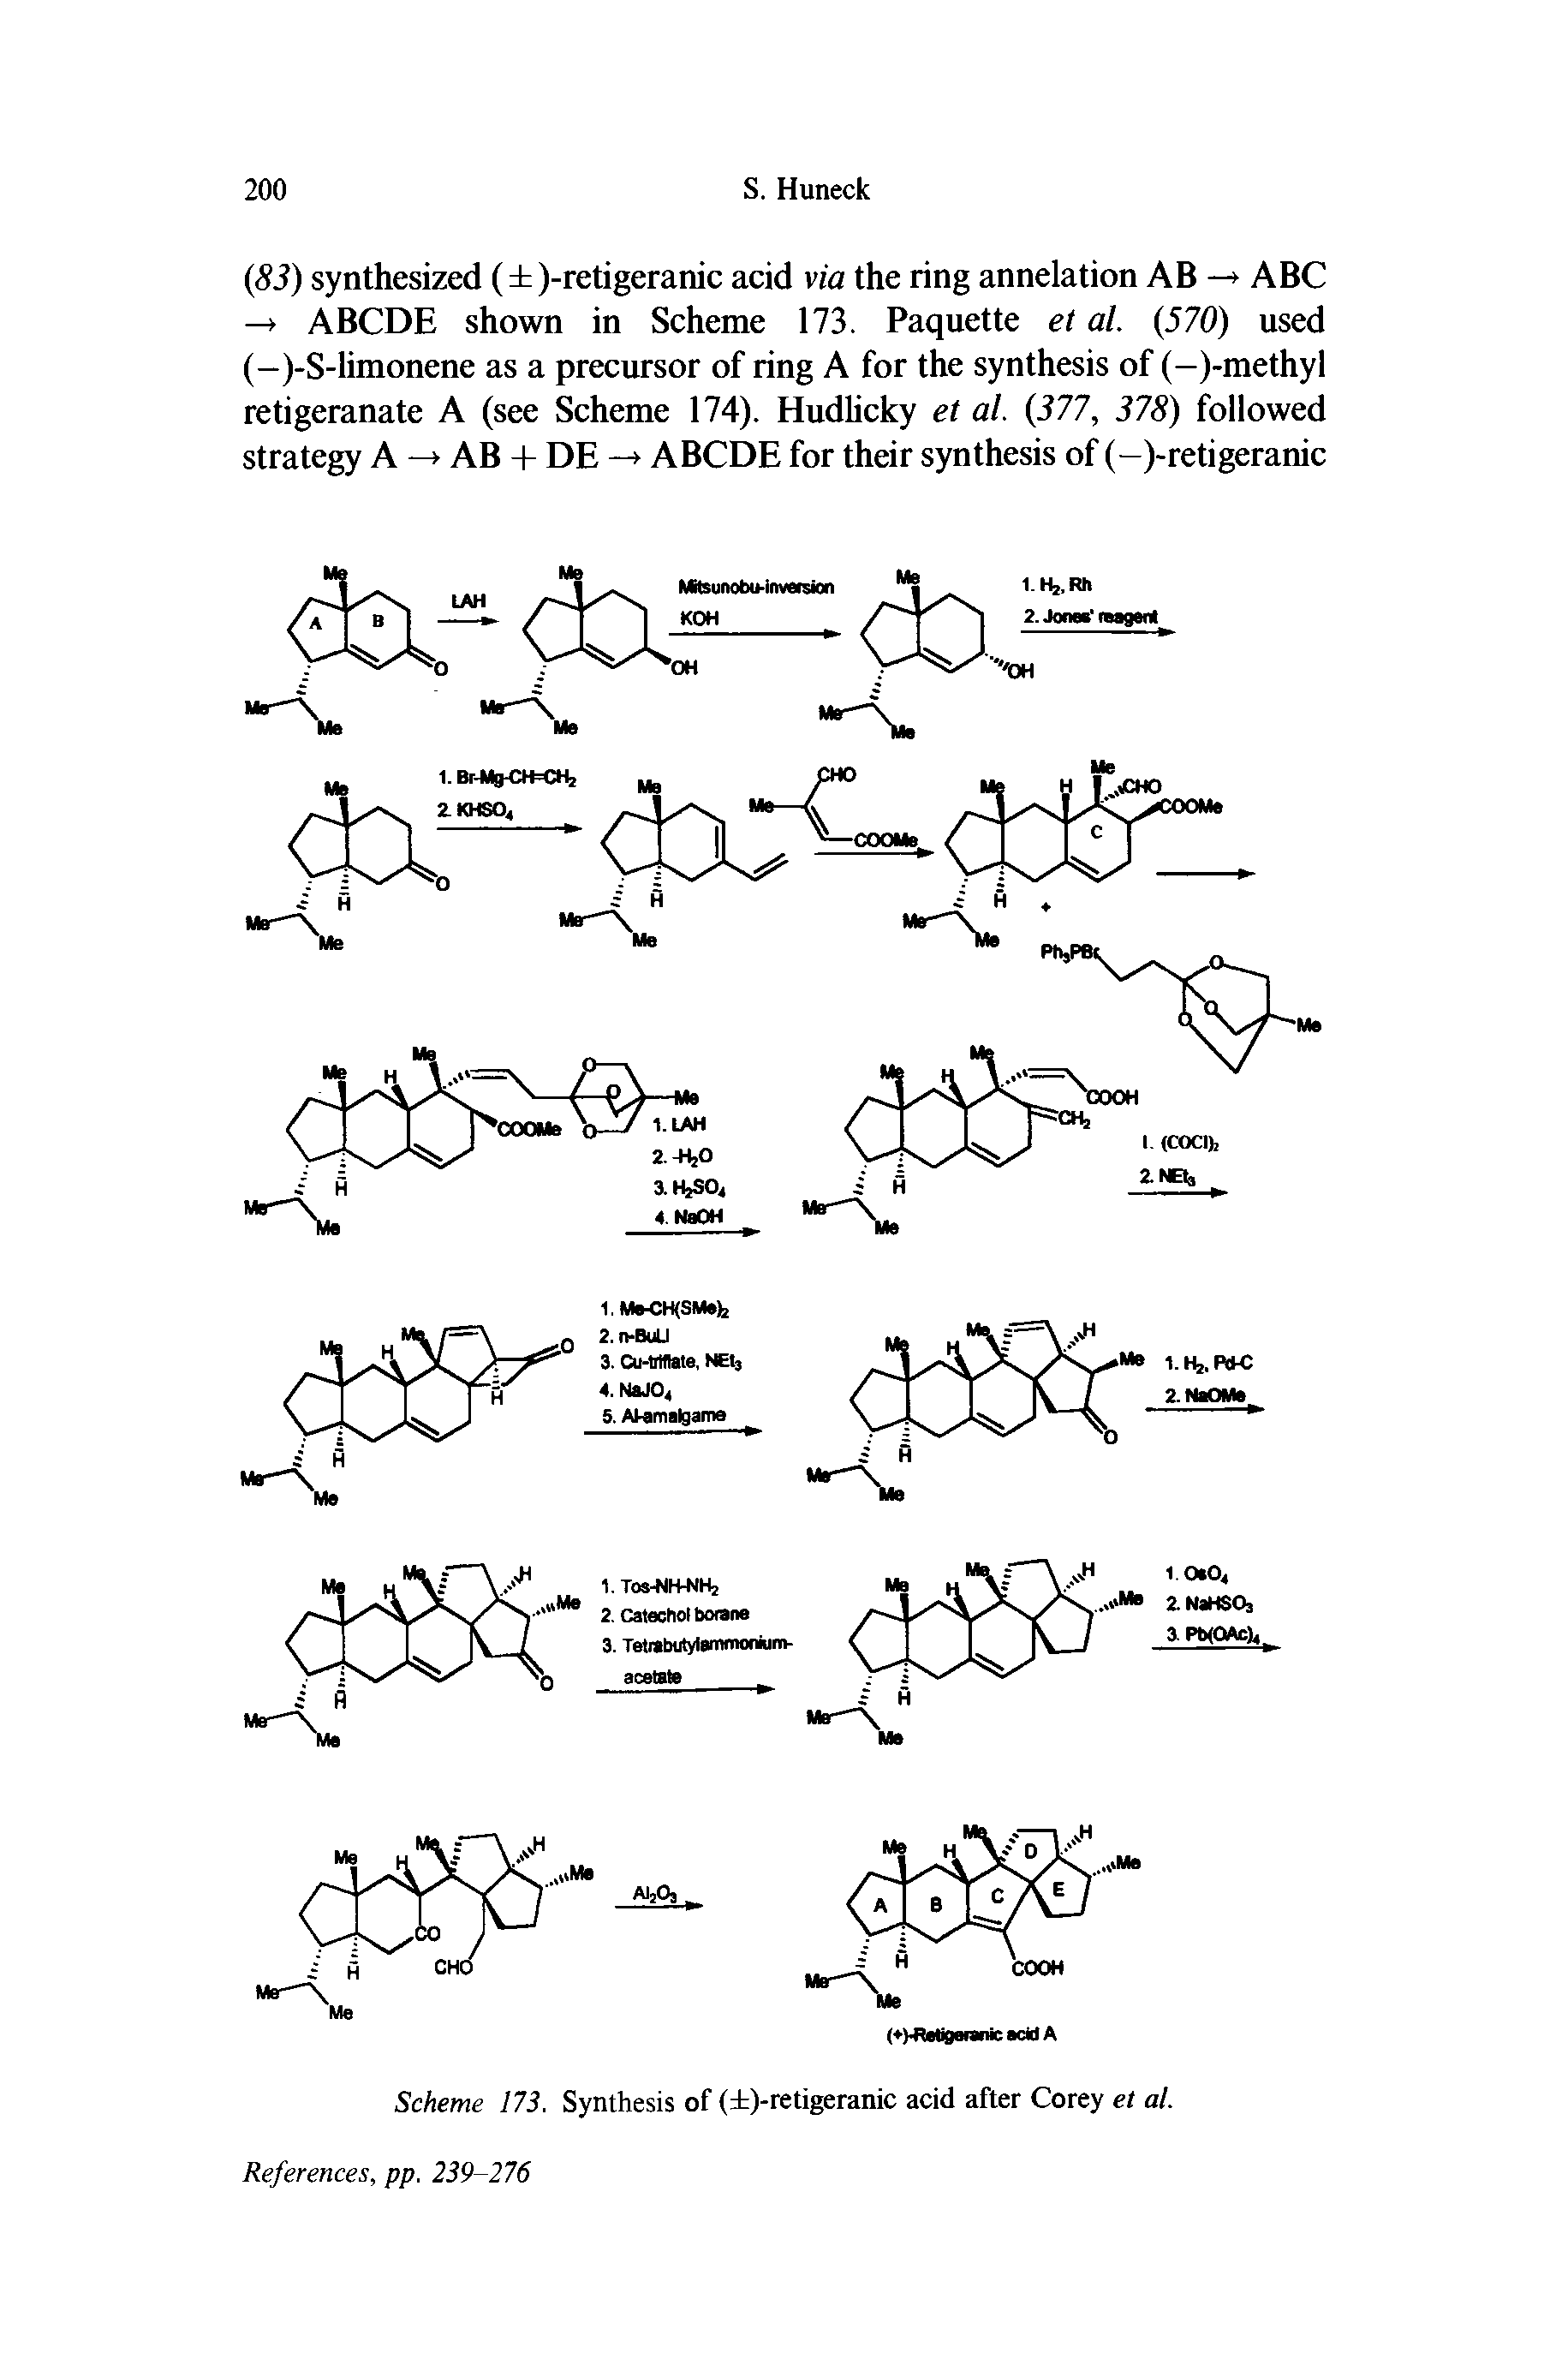 Scheme 173. Synthesis of ( )-retigeranic acid after Corey et al.